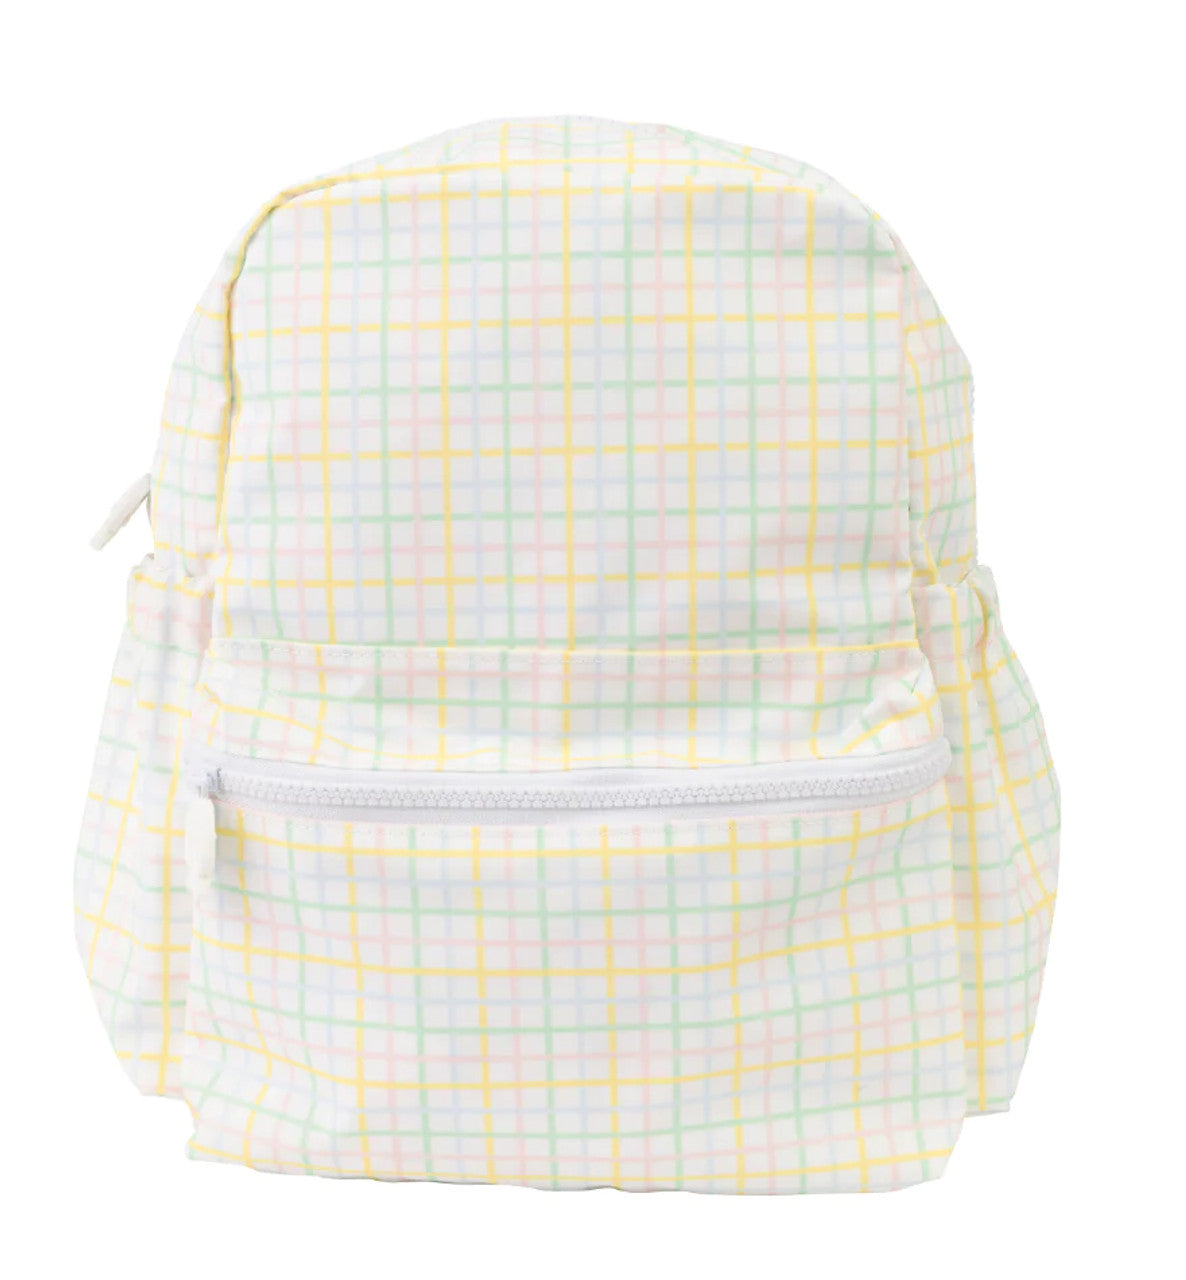 The Backpack Large | Multi Windowpane